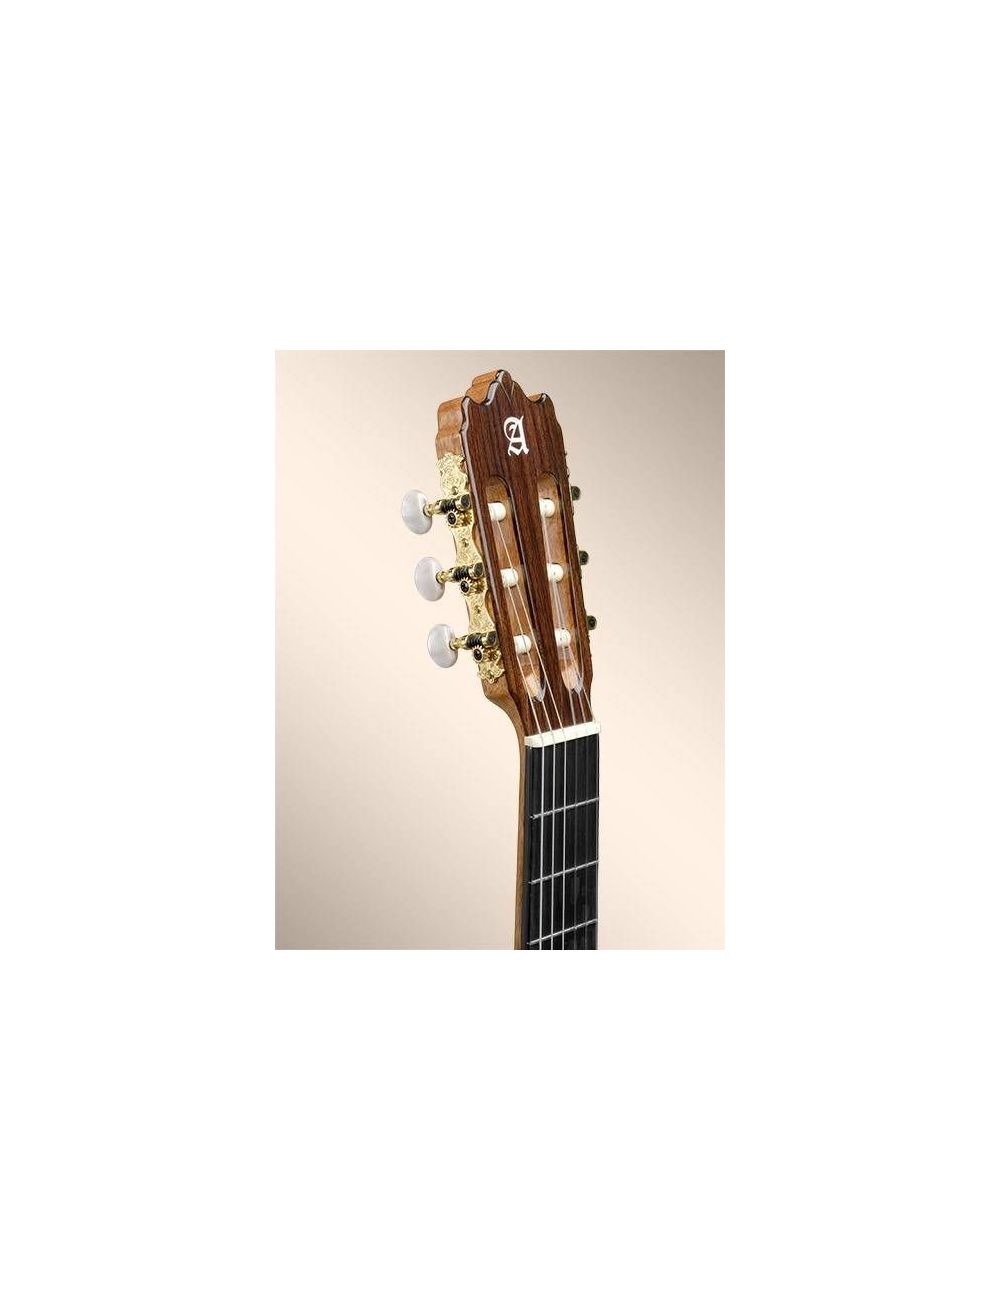 Alhambra 4P LH Left Handed Classical Guitar 6507 V left-handed guitars